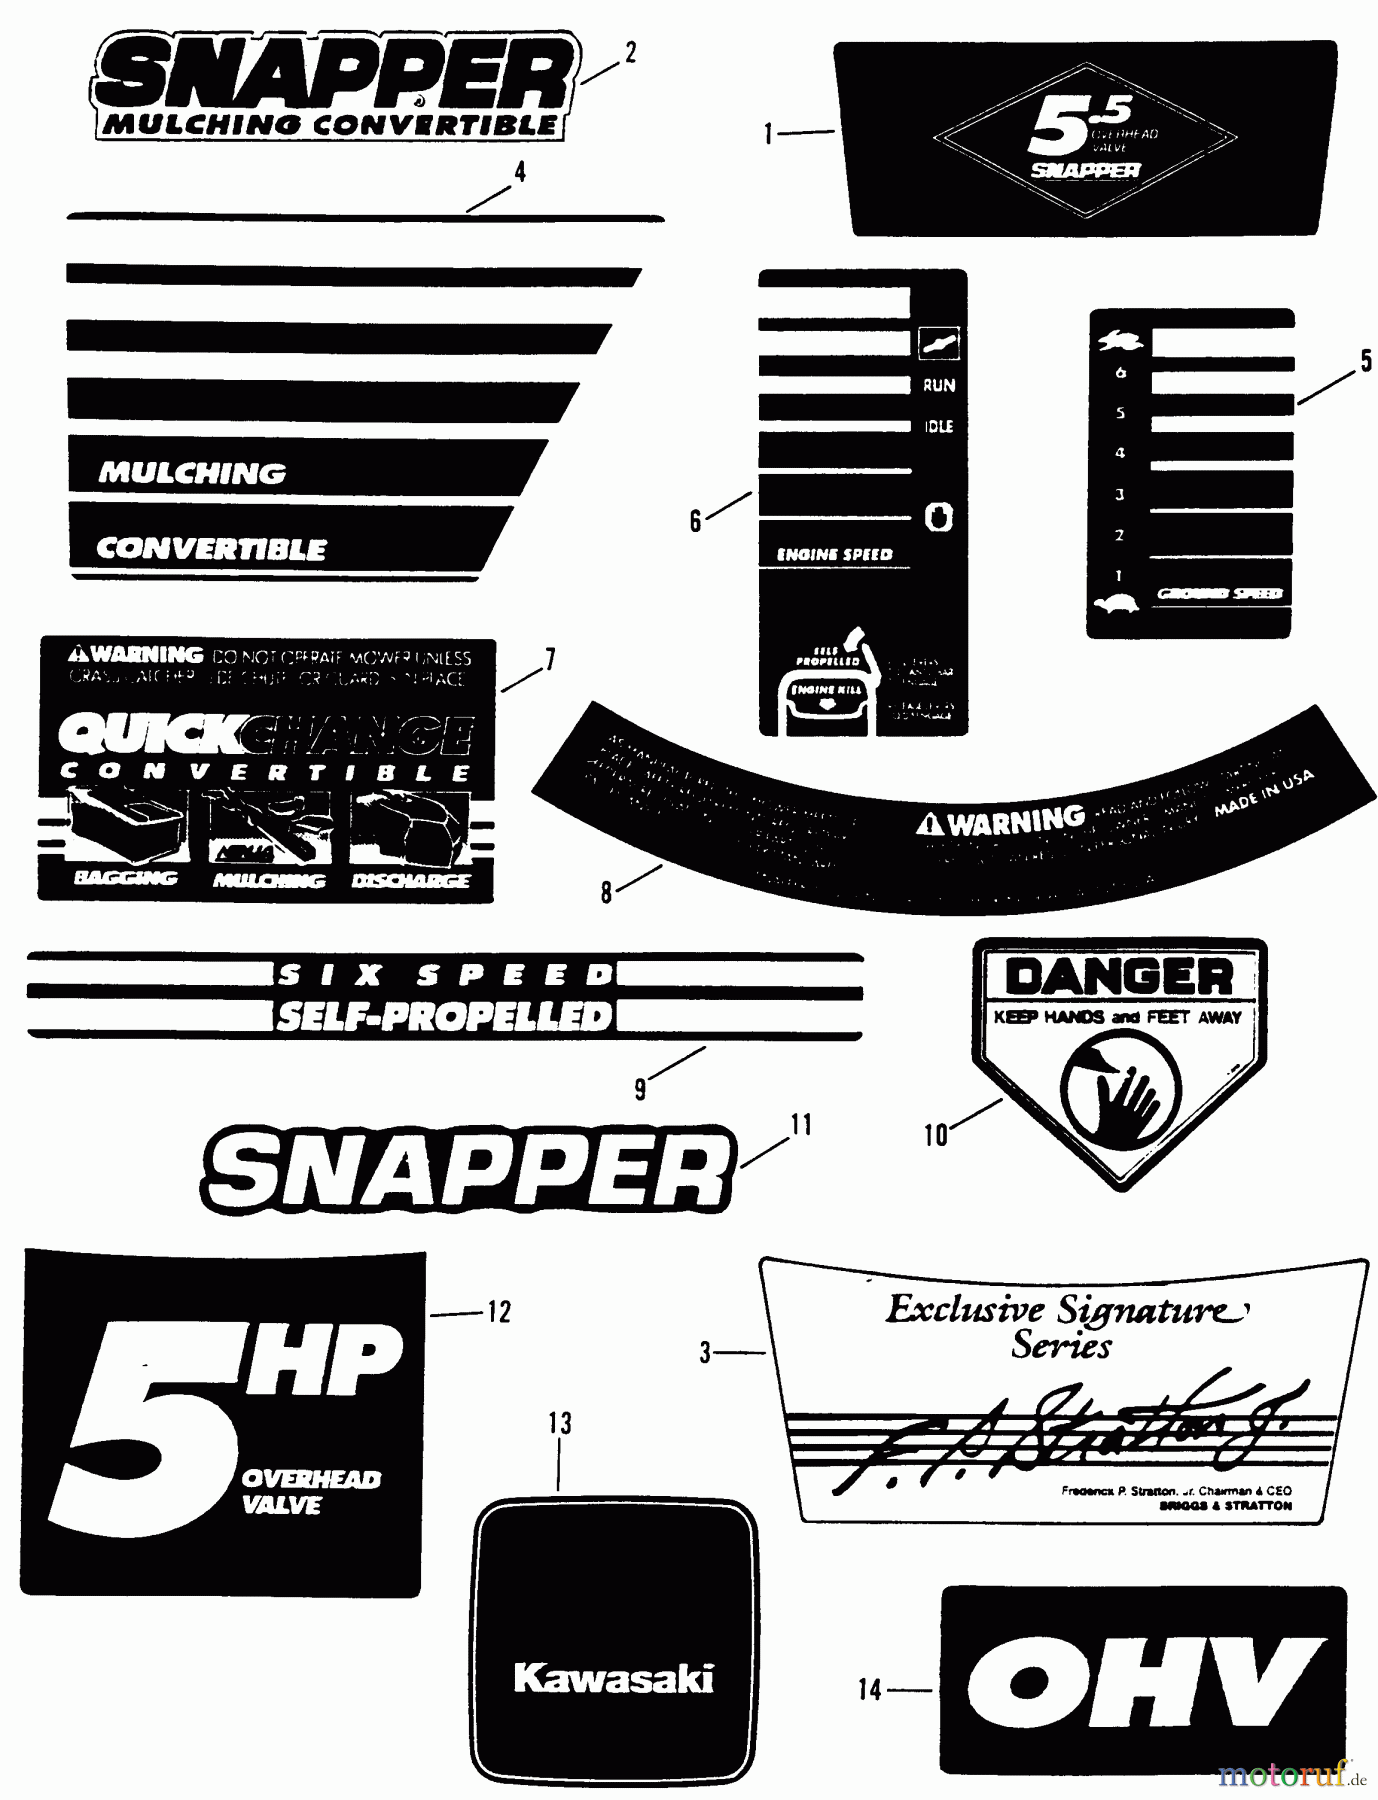  Snapper Rasenmäher EXP21551VE - Snapper 21